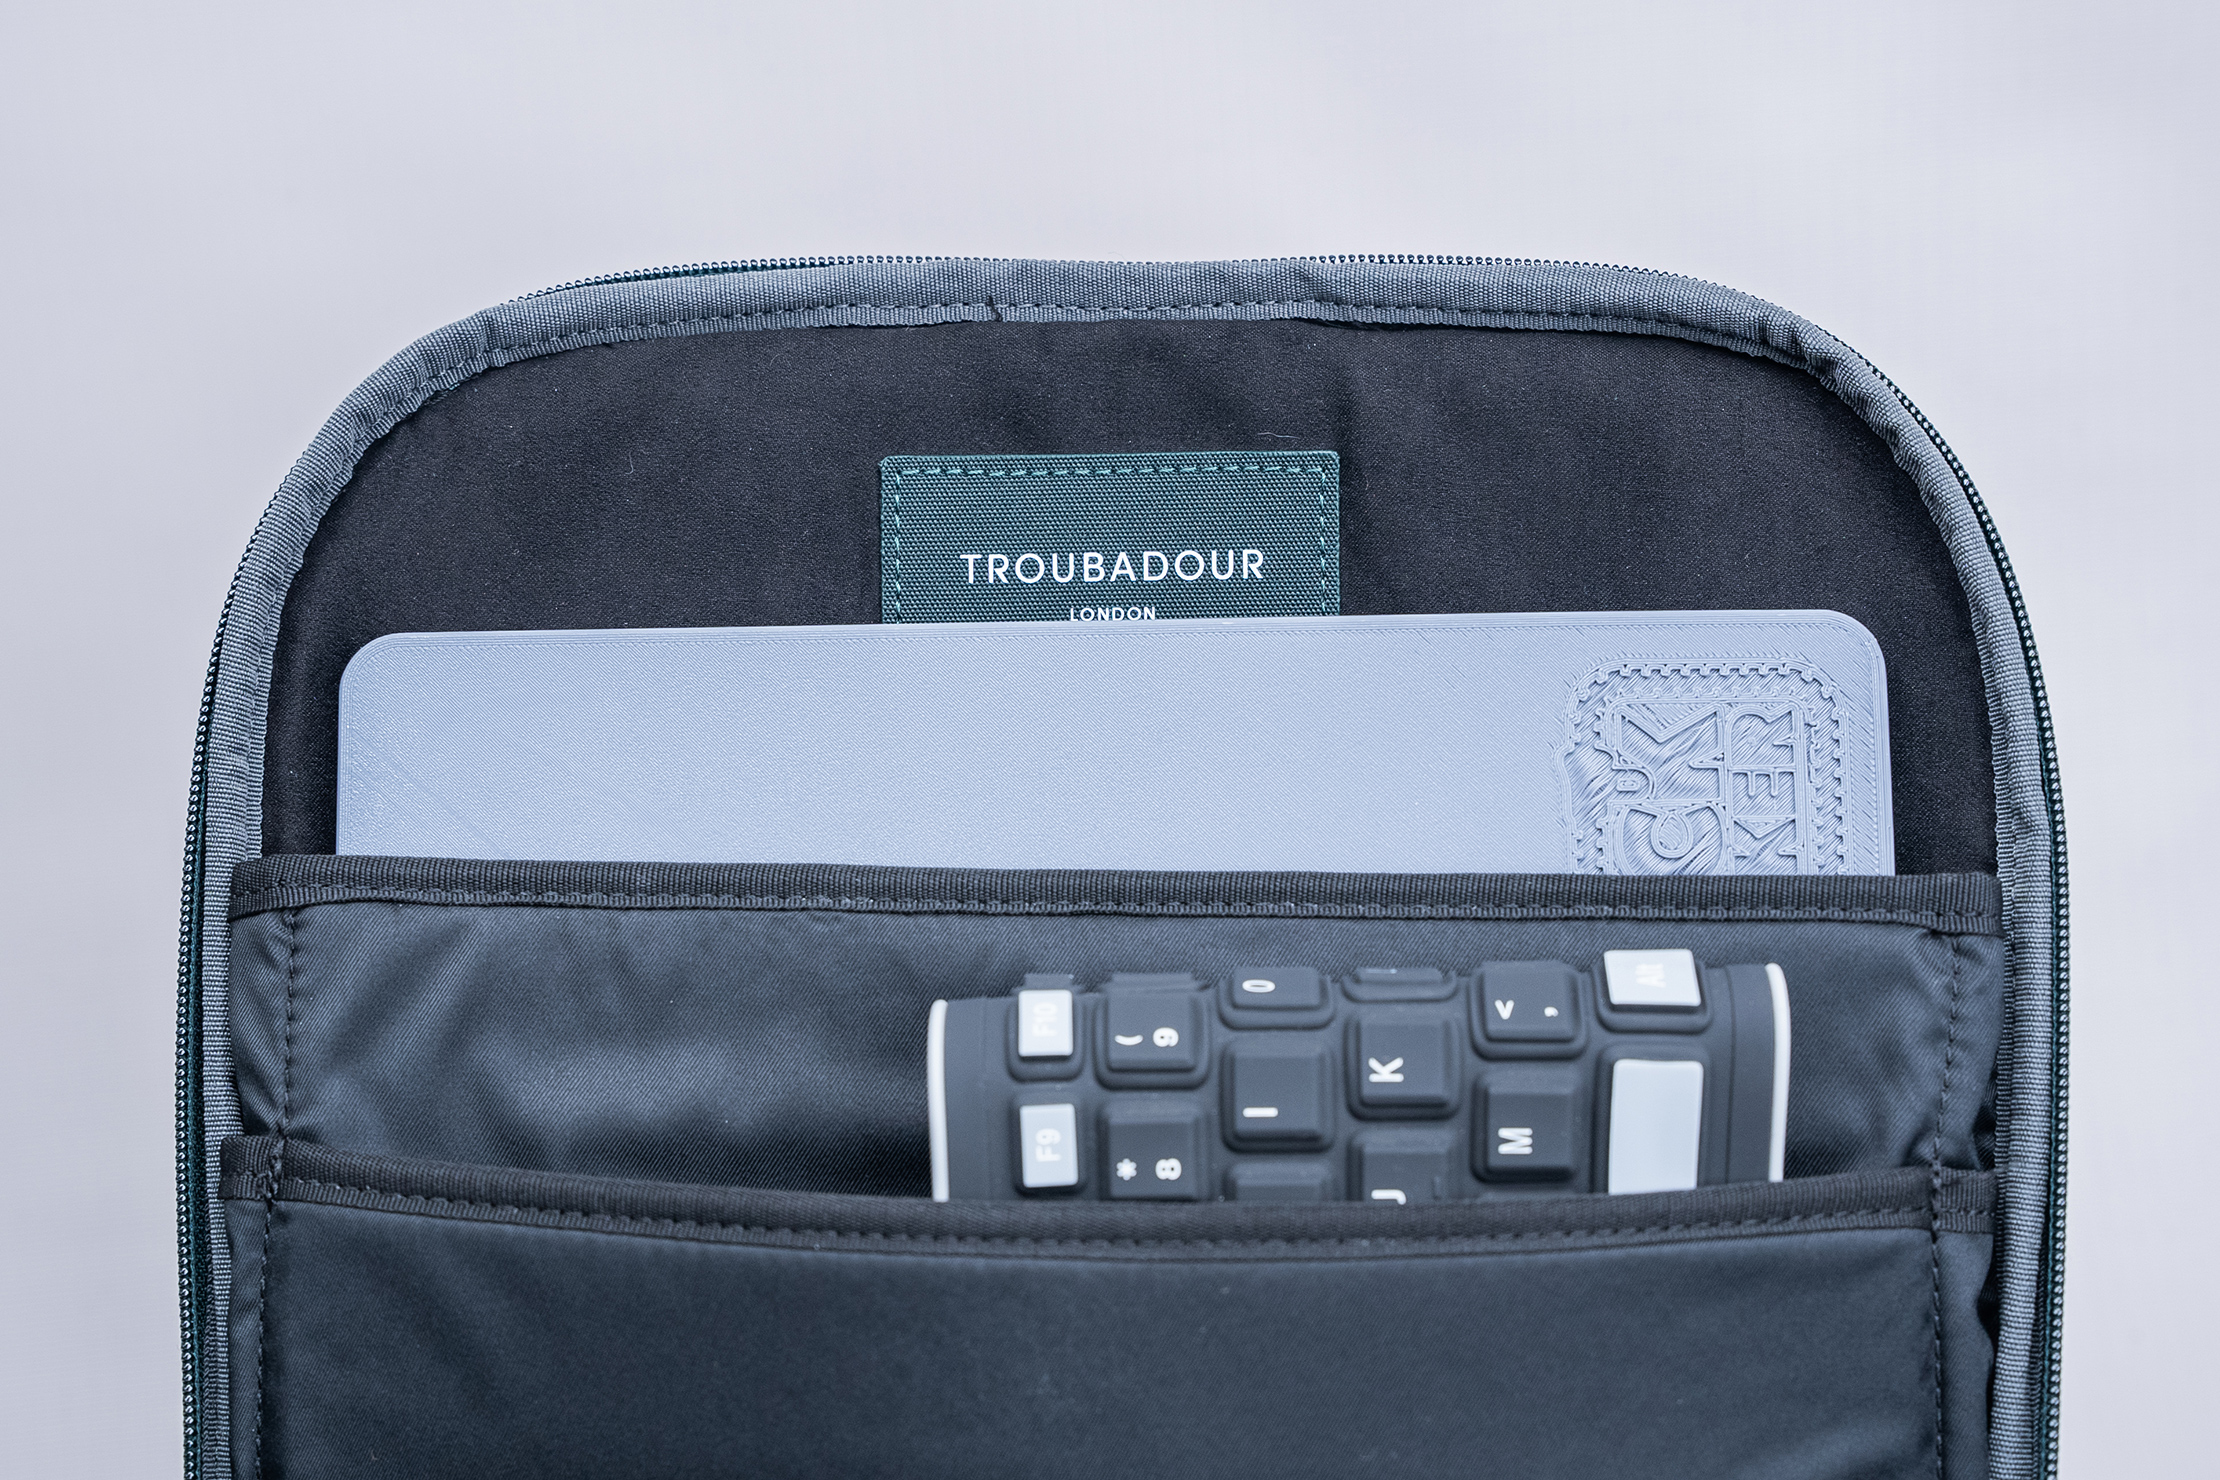 Troubadour Apex Backpack laptop compartment size